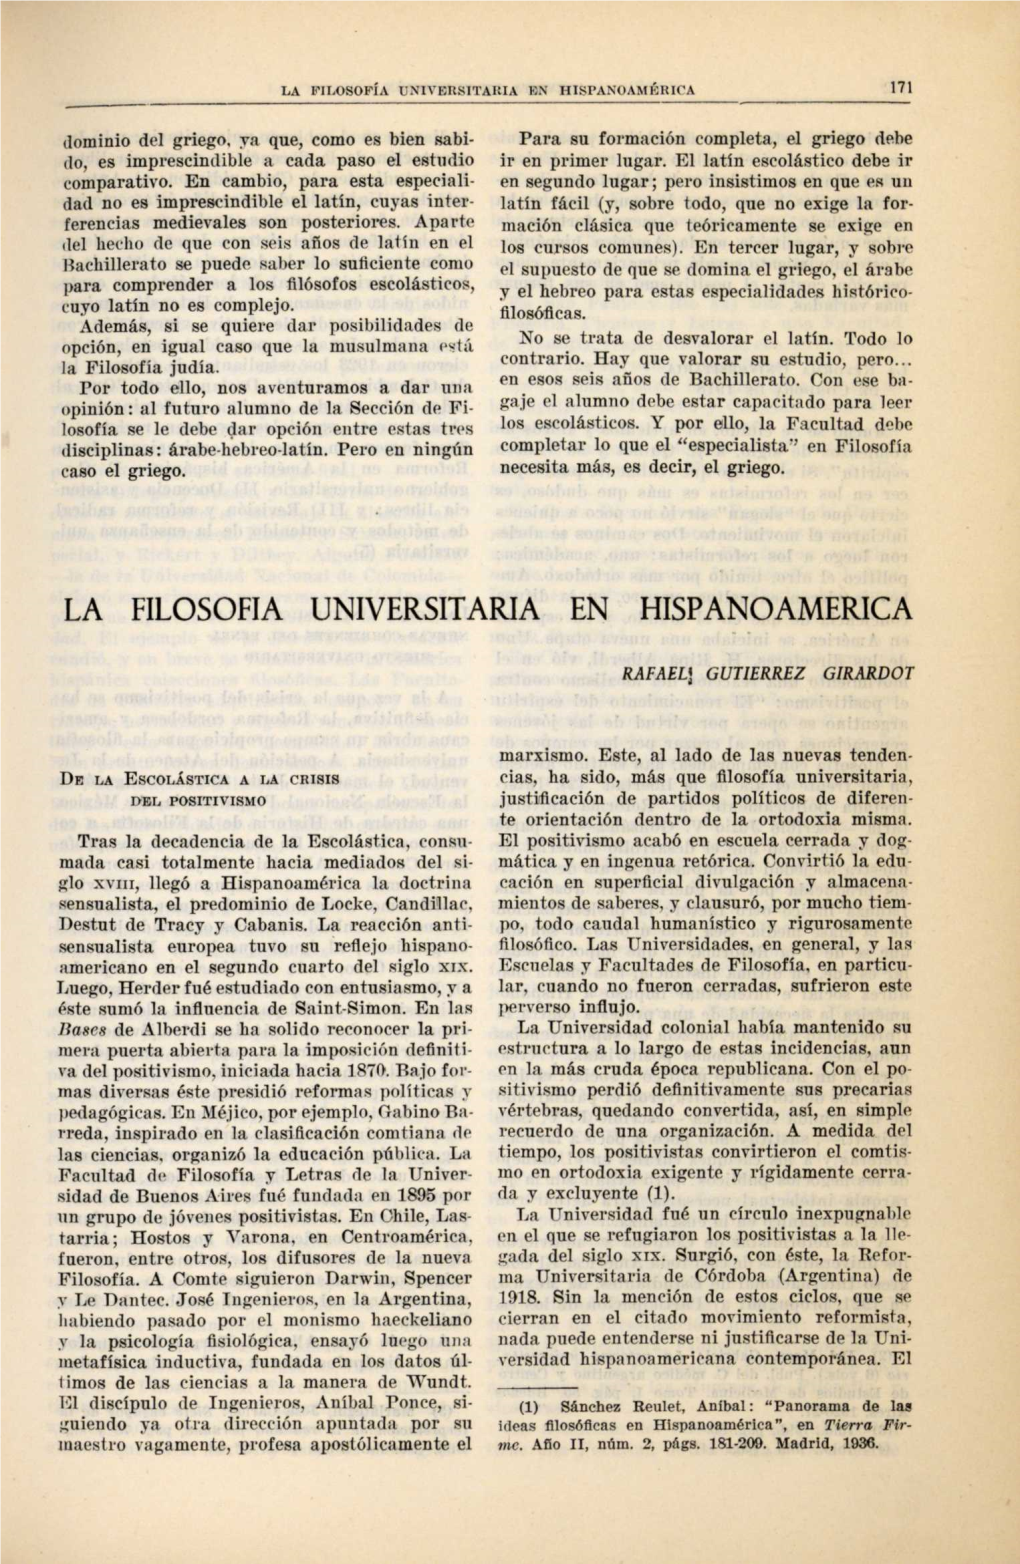 La Filosofia Universitaria En Hispanoamerica